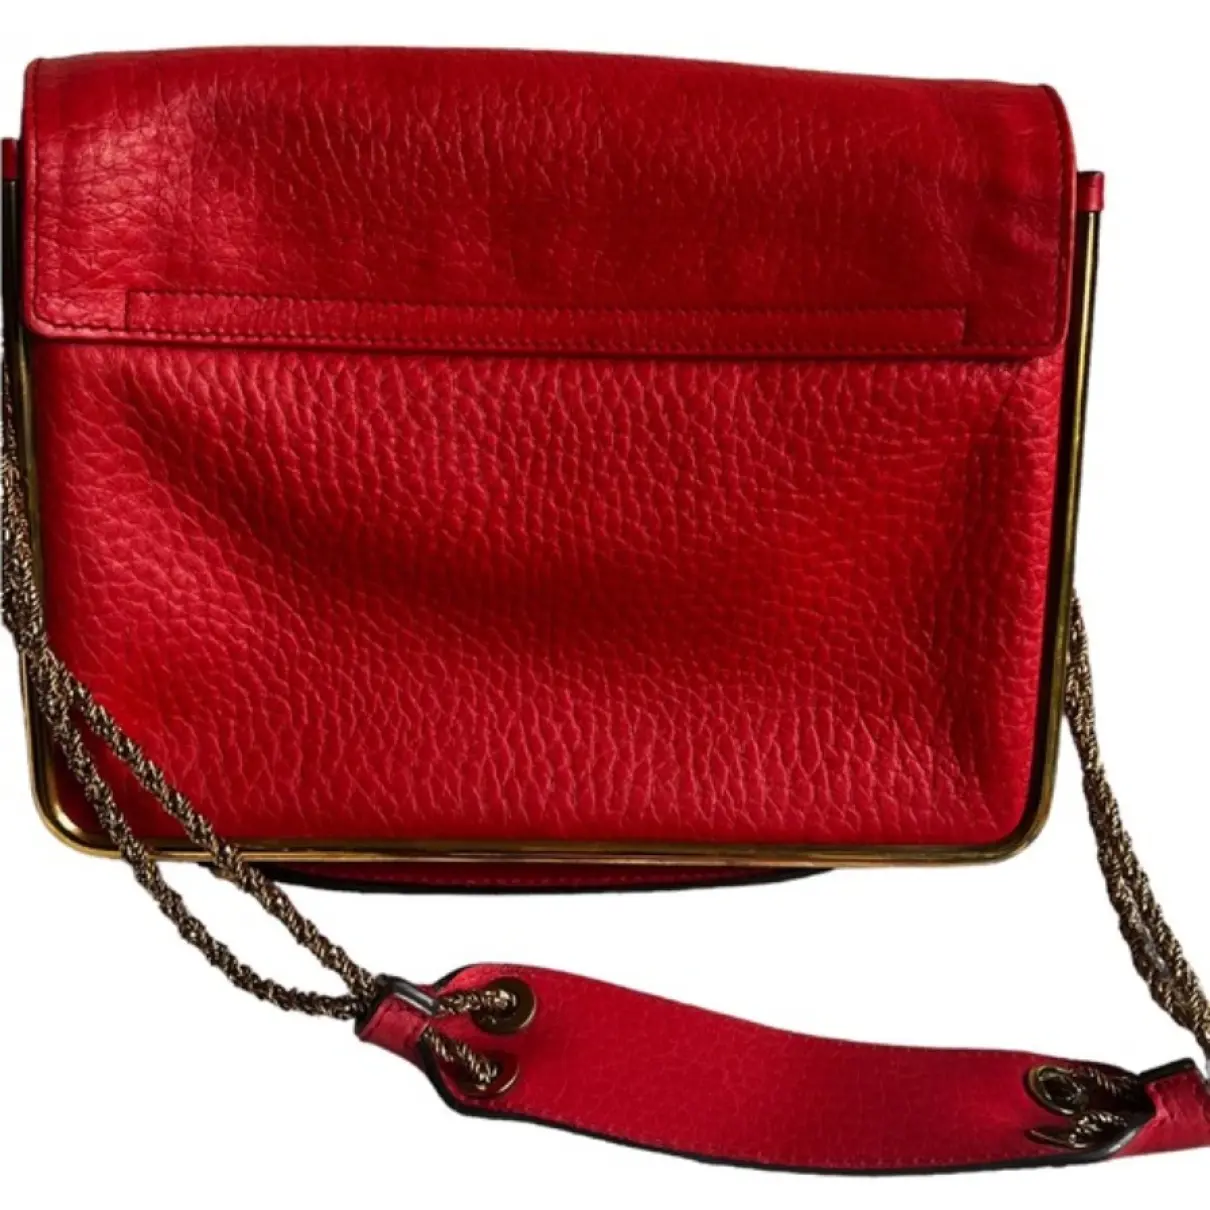 Sally leather handbag Chloé